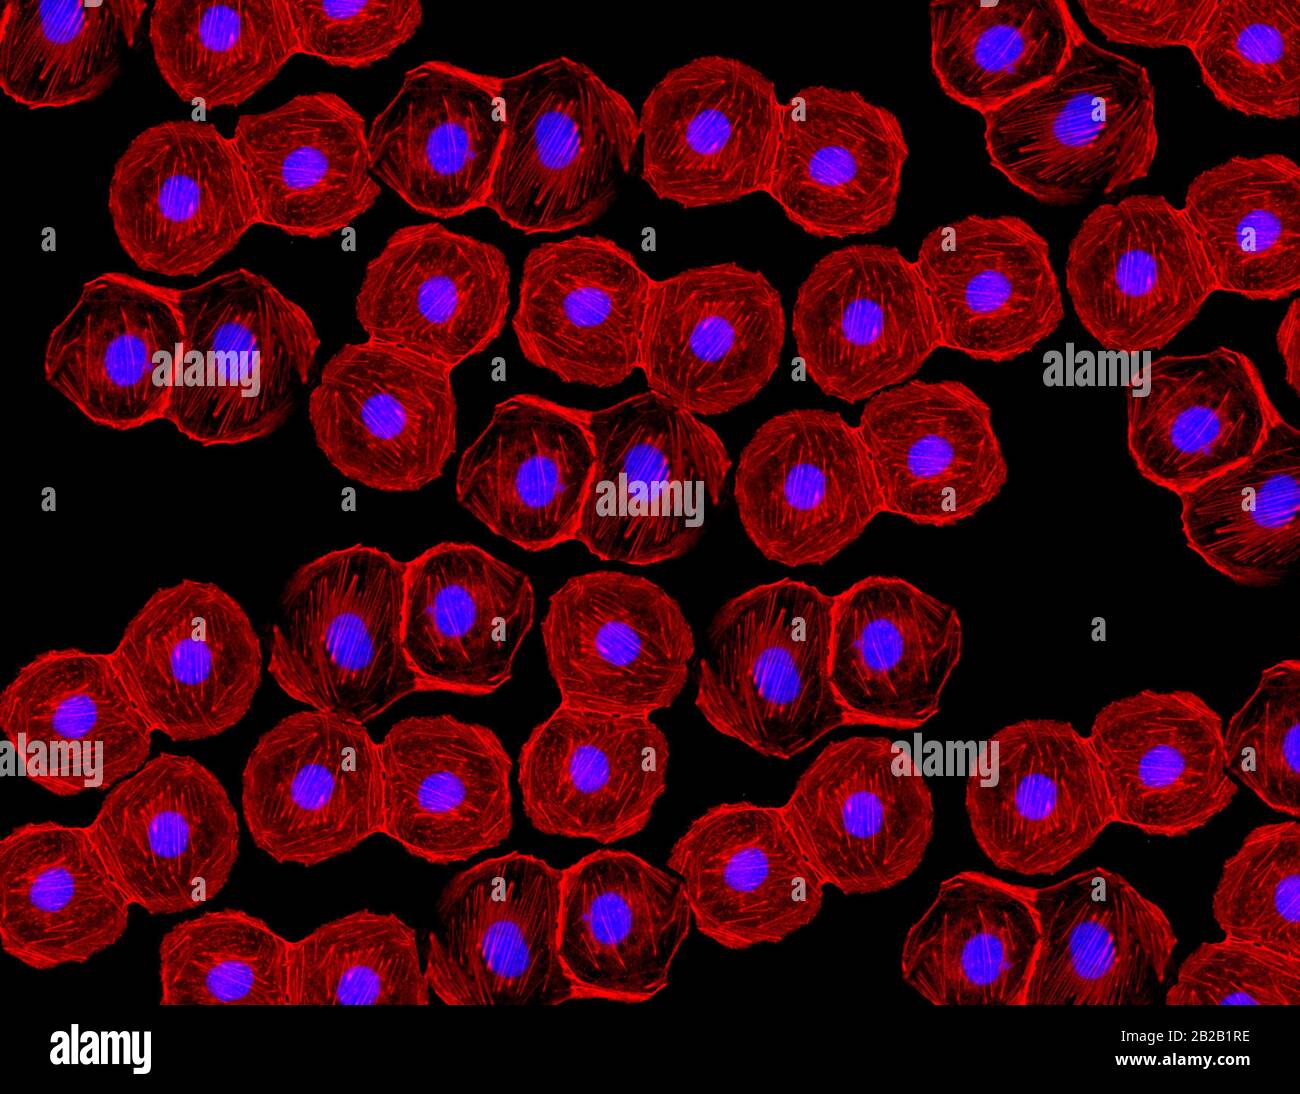 Confocal microscopy immagini e fotografie stock ad alta risoluzione - Alamy